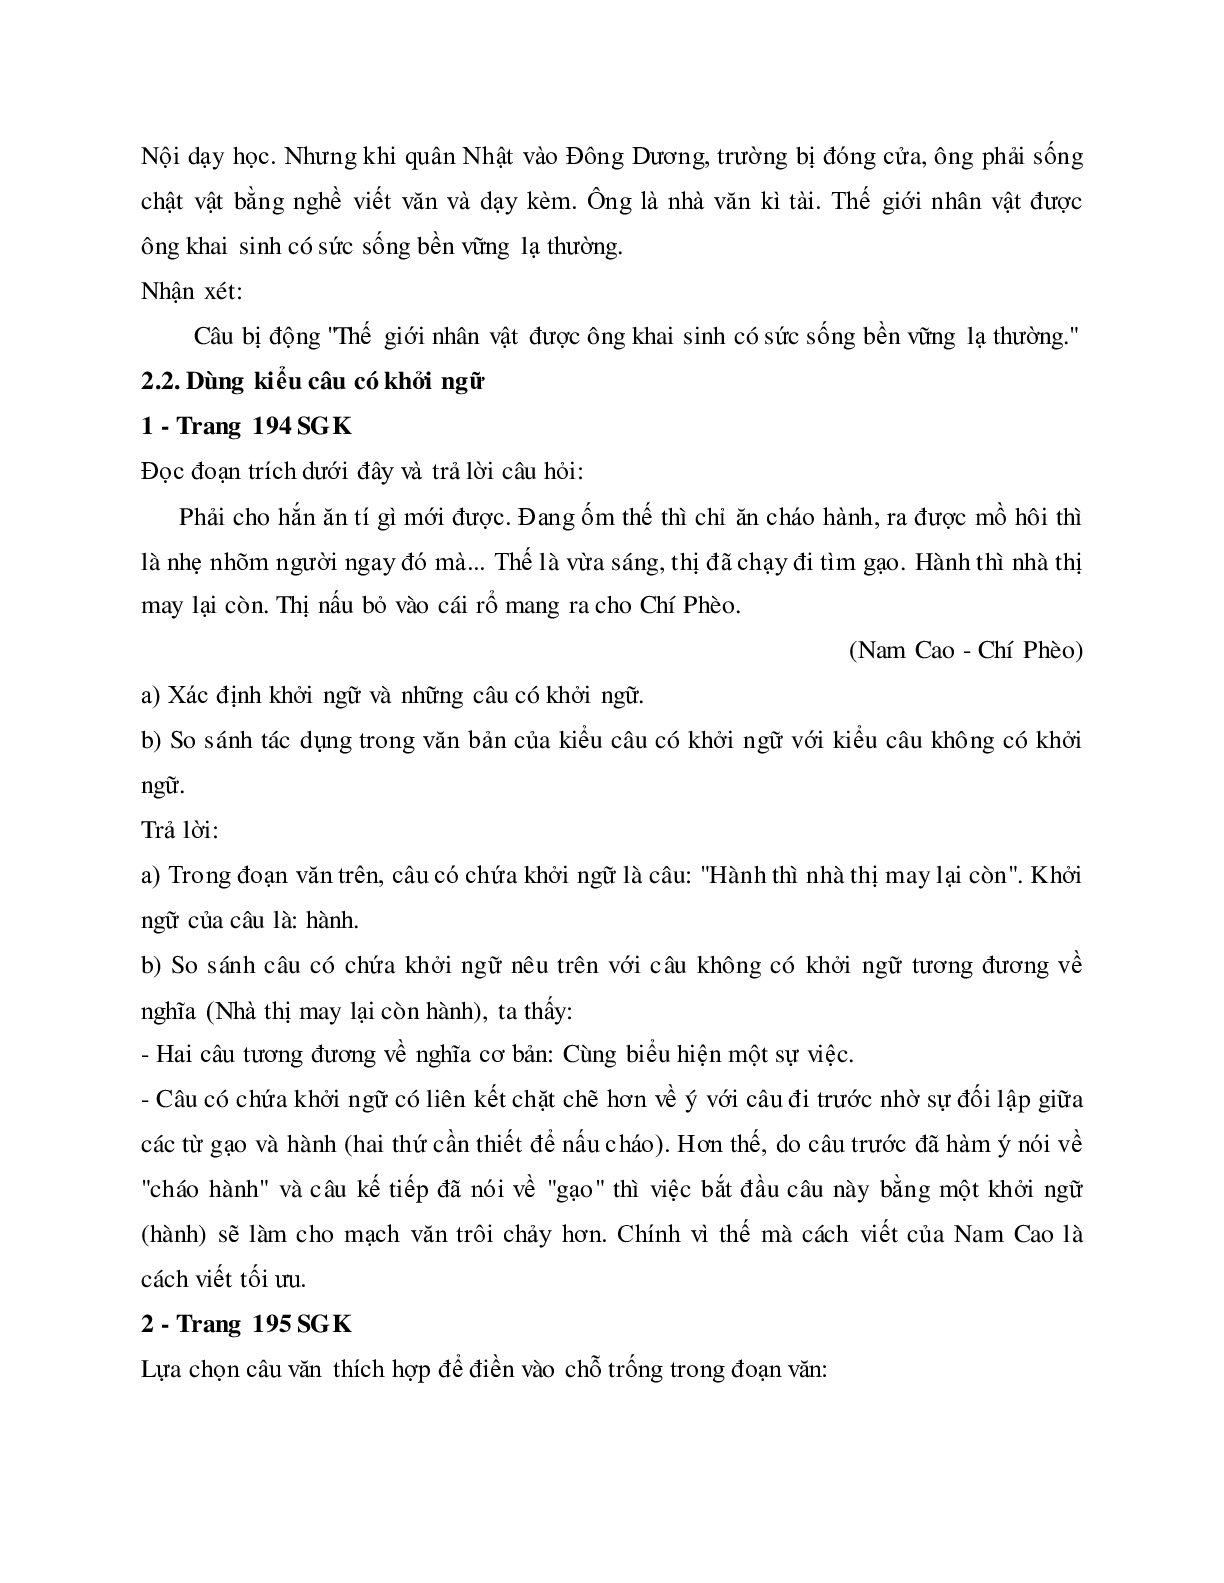 Soạn bài Thực hành về sử dụng một số kiểu câu trong văn bản - ngắn nhất Soạn văn 11 (trang 5)